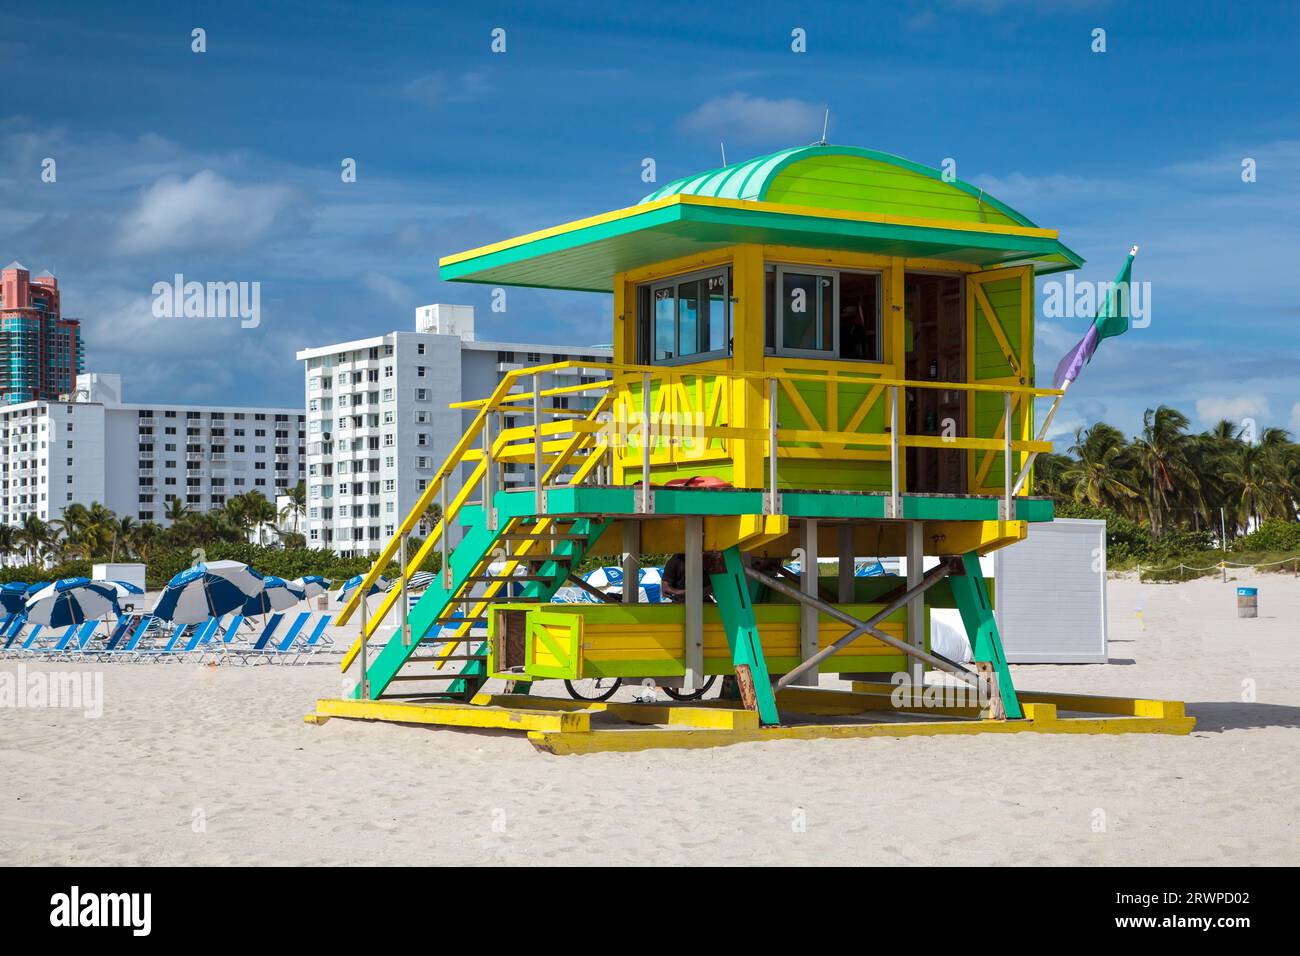 6th Street Lifeguard Tower, South Beach, ville de Miami Beach, Floride : poste de sauveteur peint en vert vif et jaune Banque D'Images